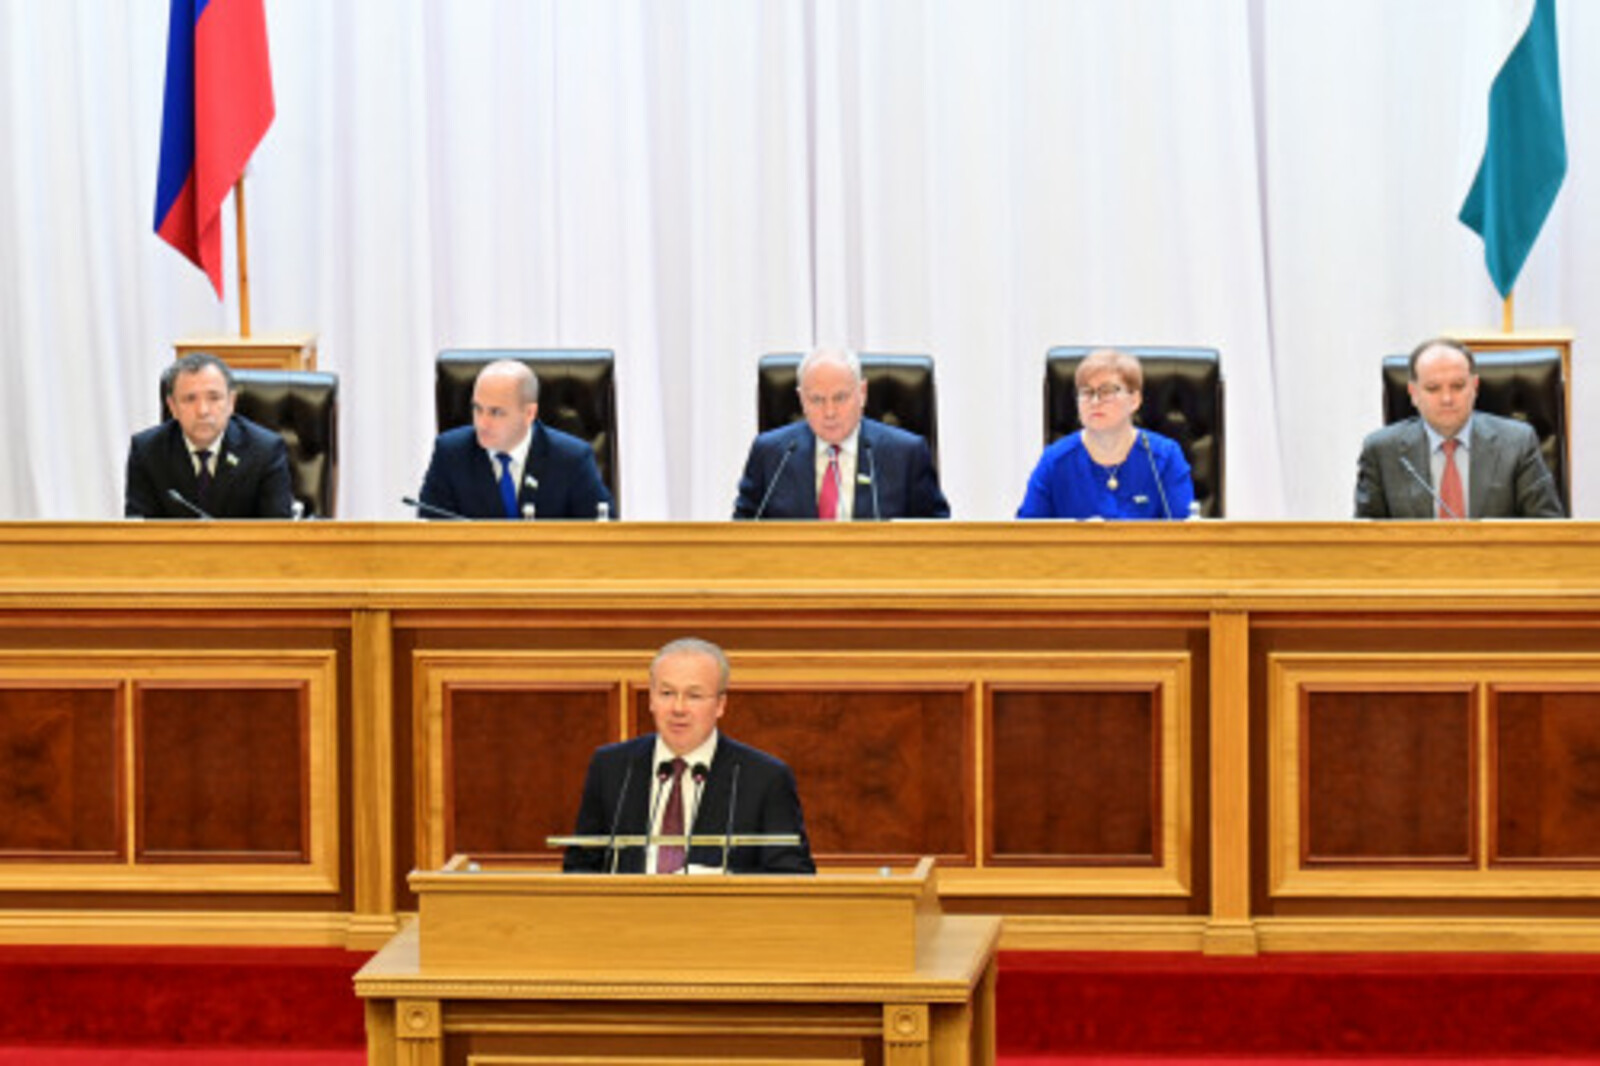 Правительство Республики Башкортостан представило отчет в Государственном Собрании - Курултае